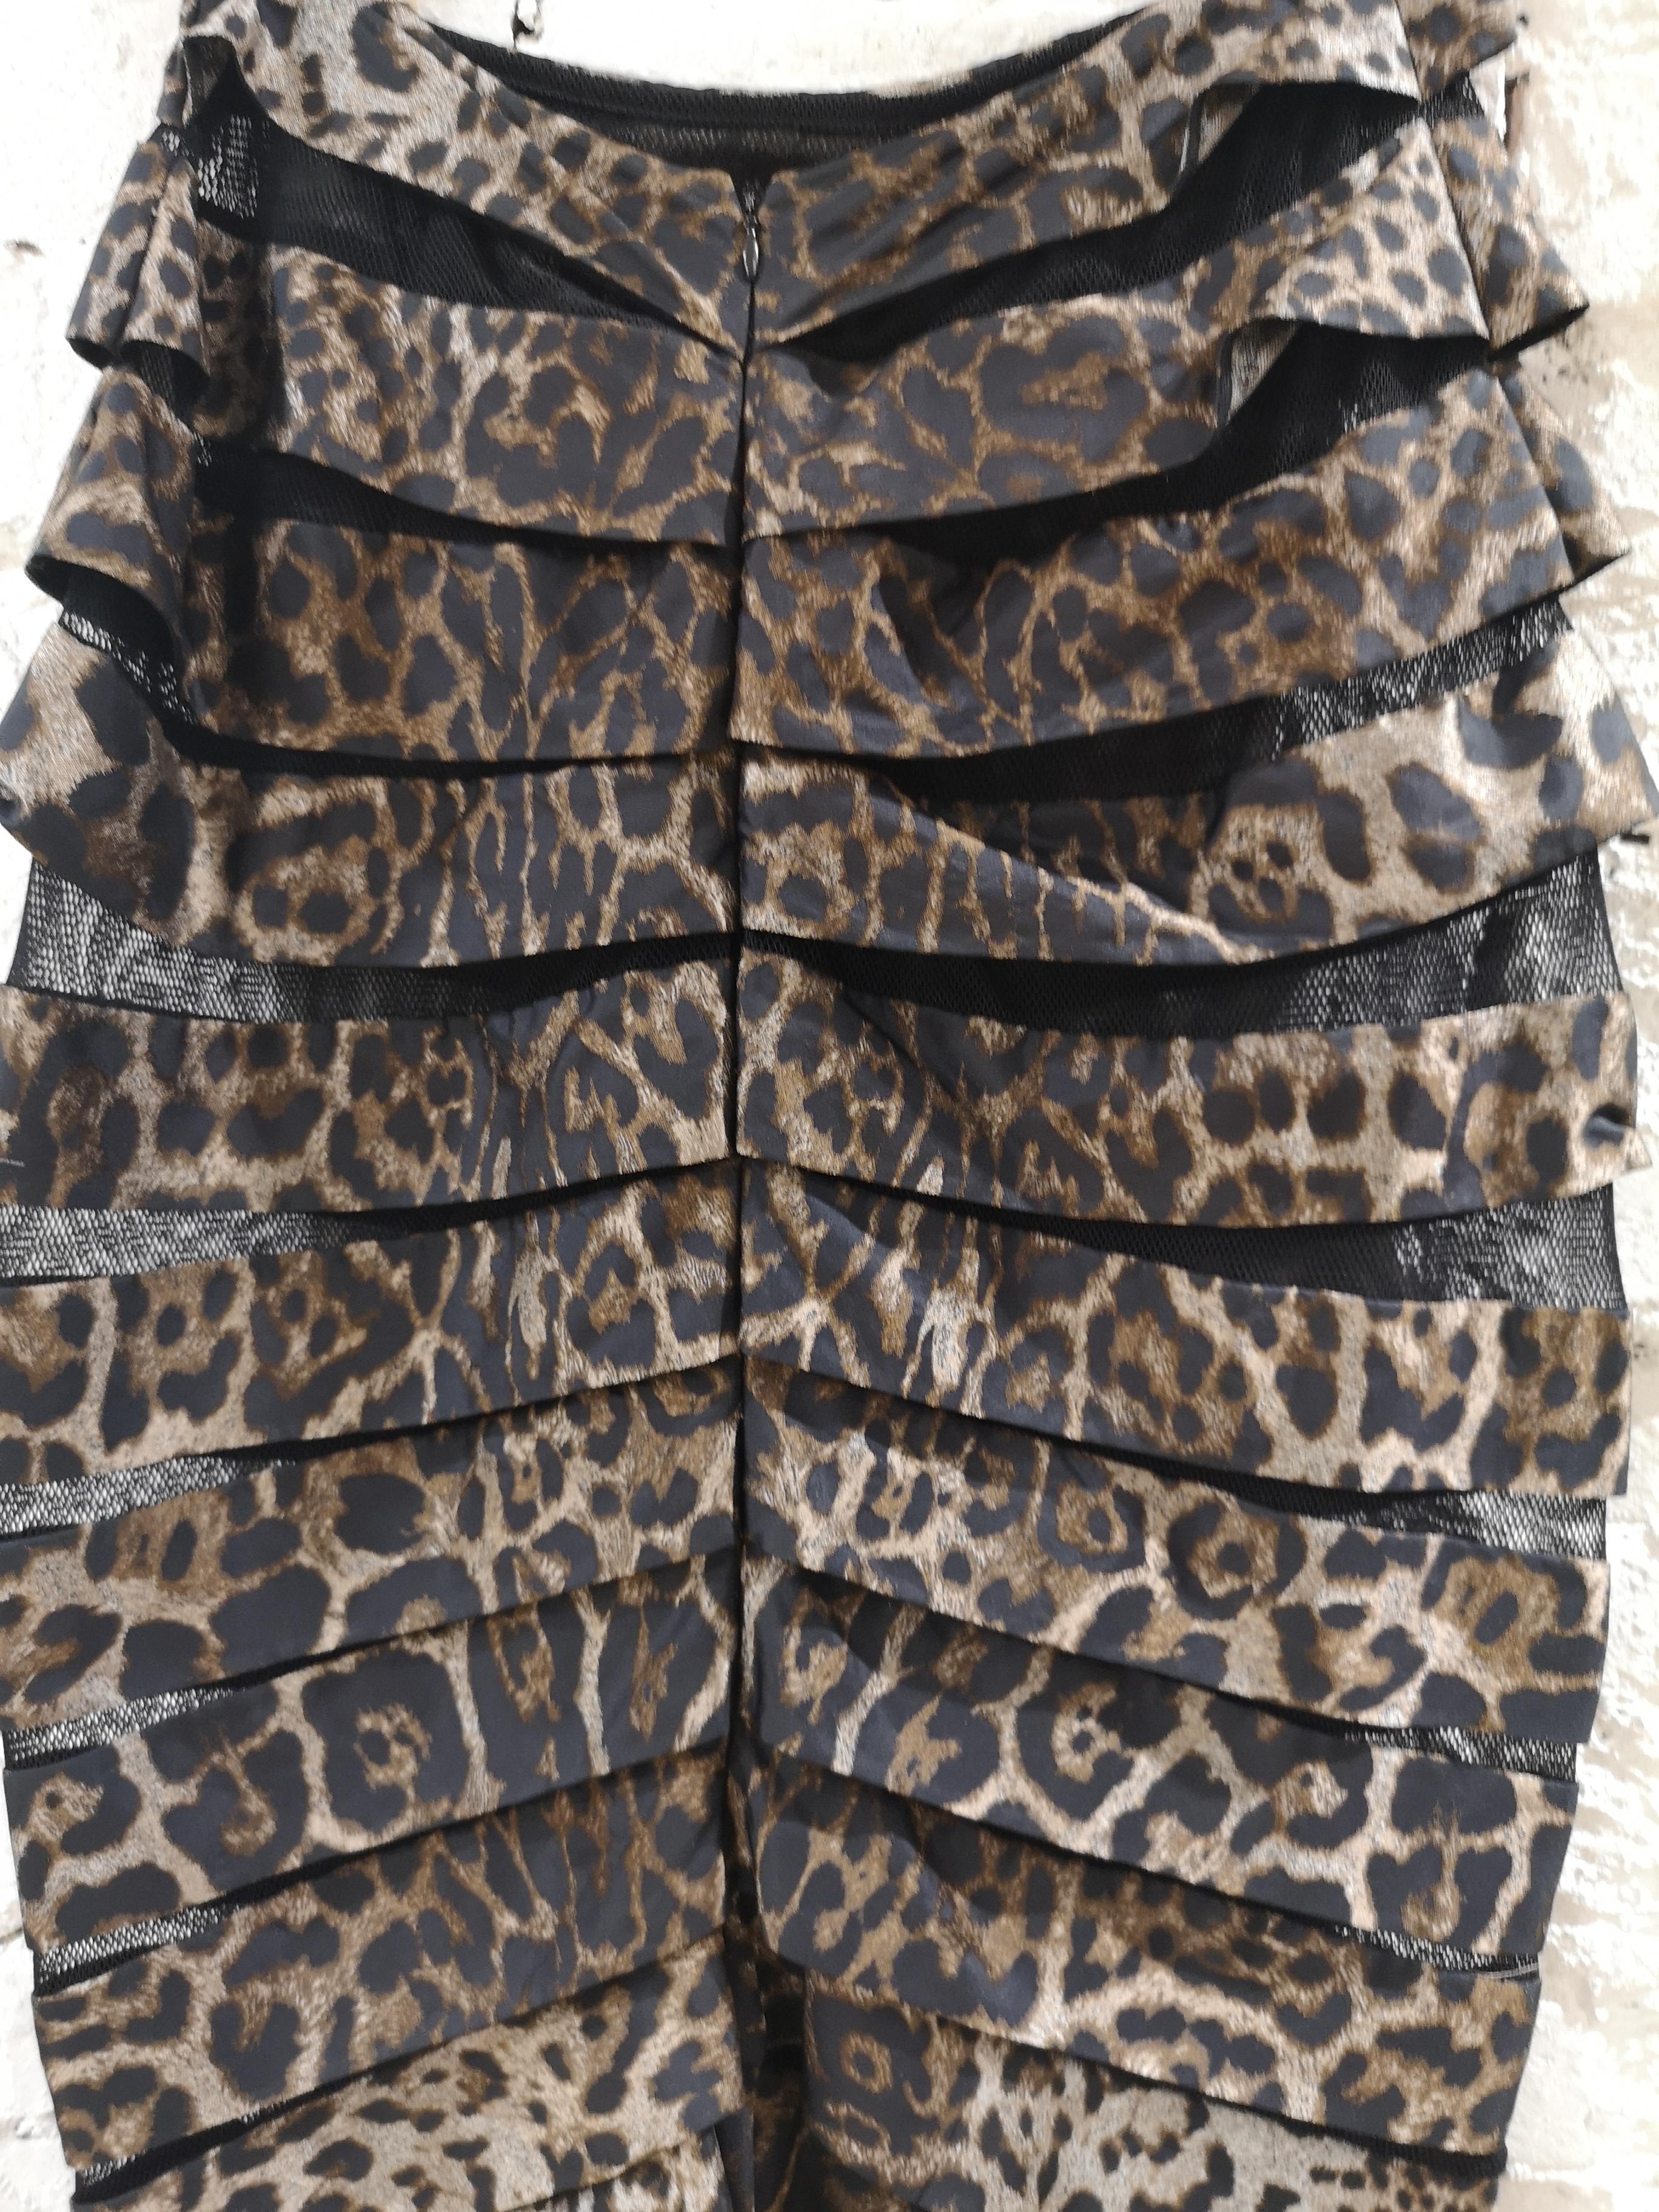 Gianfranco Ferrè cheetah see through skirt 1